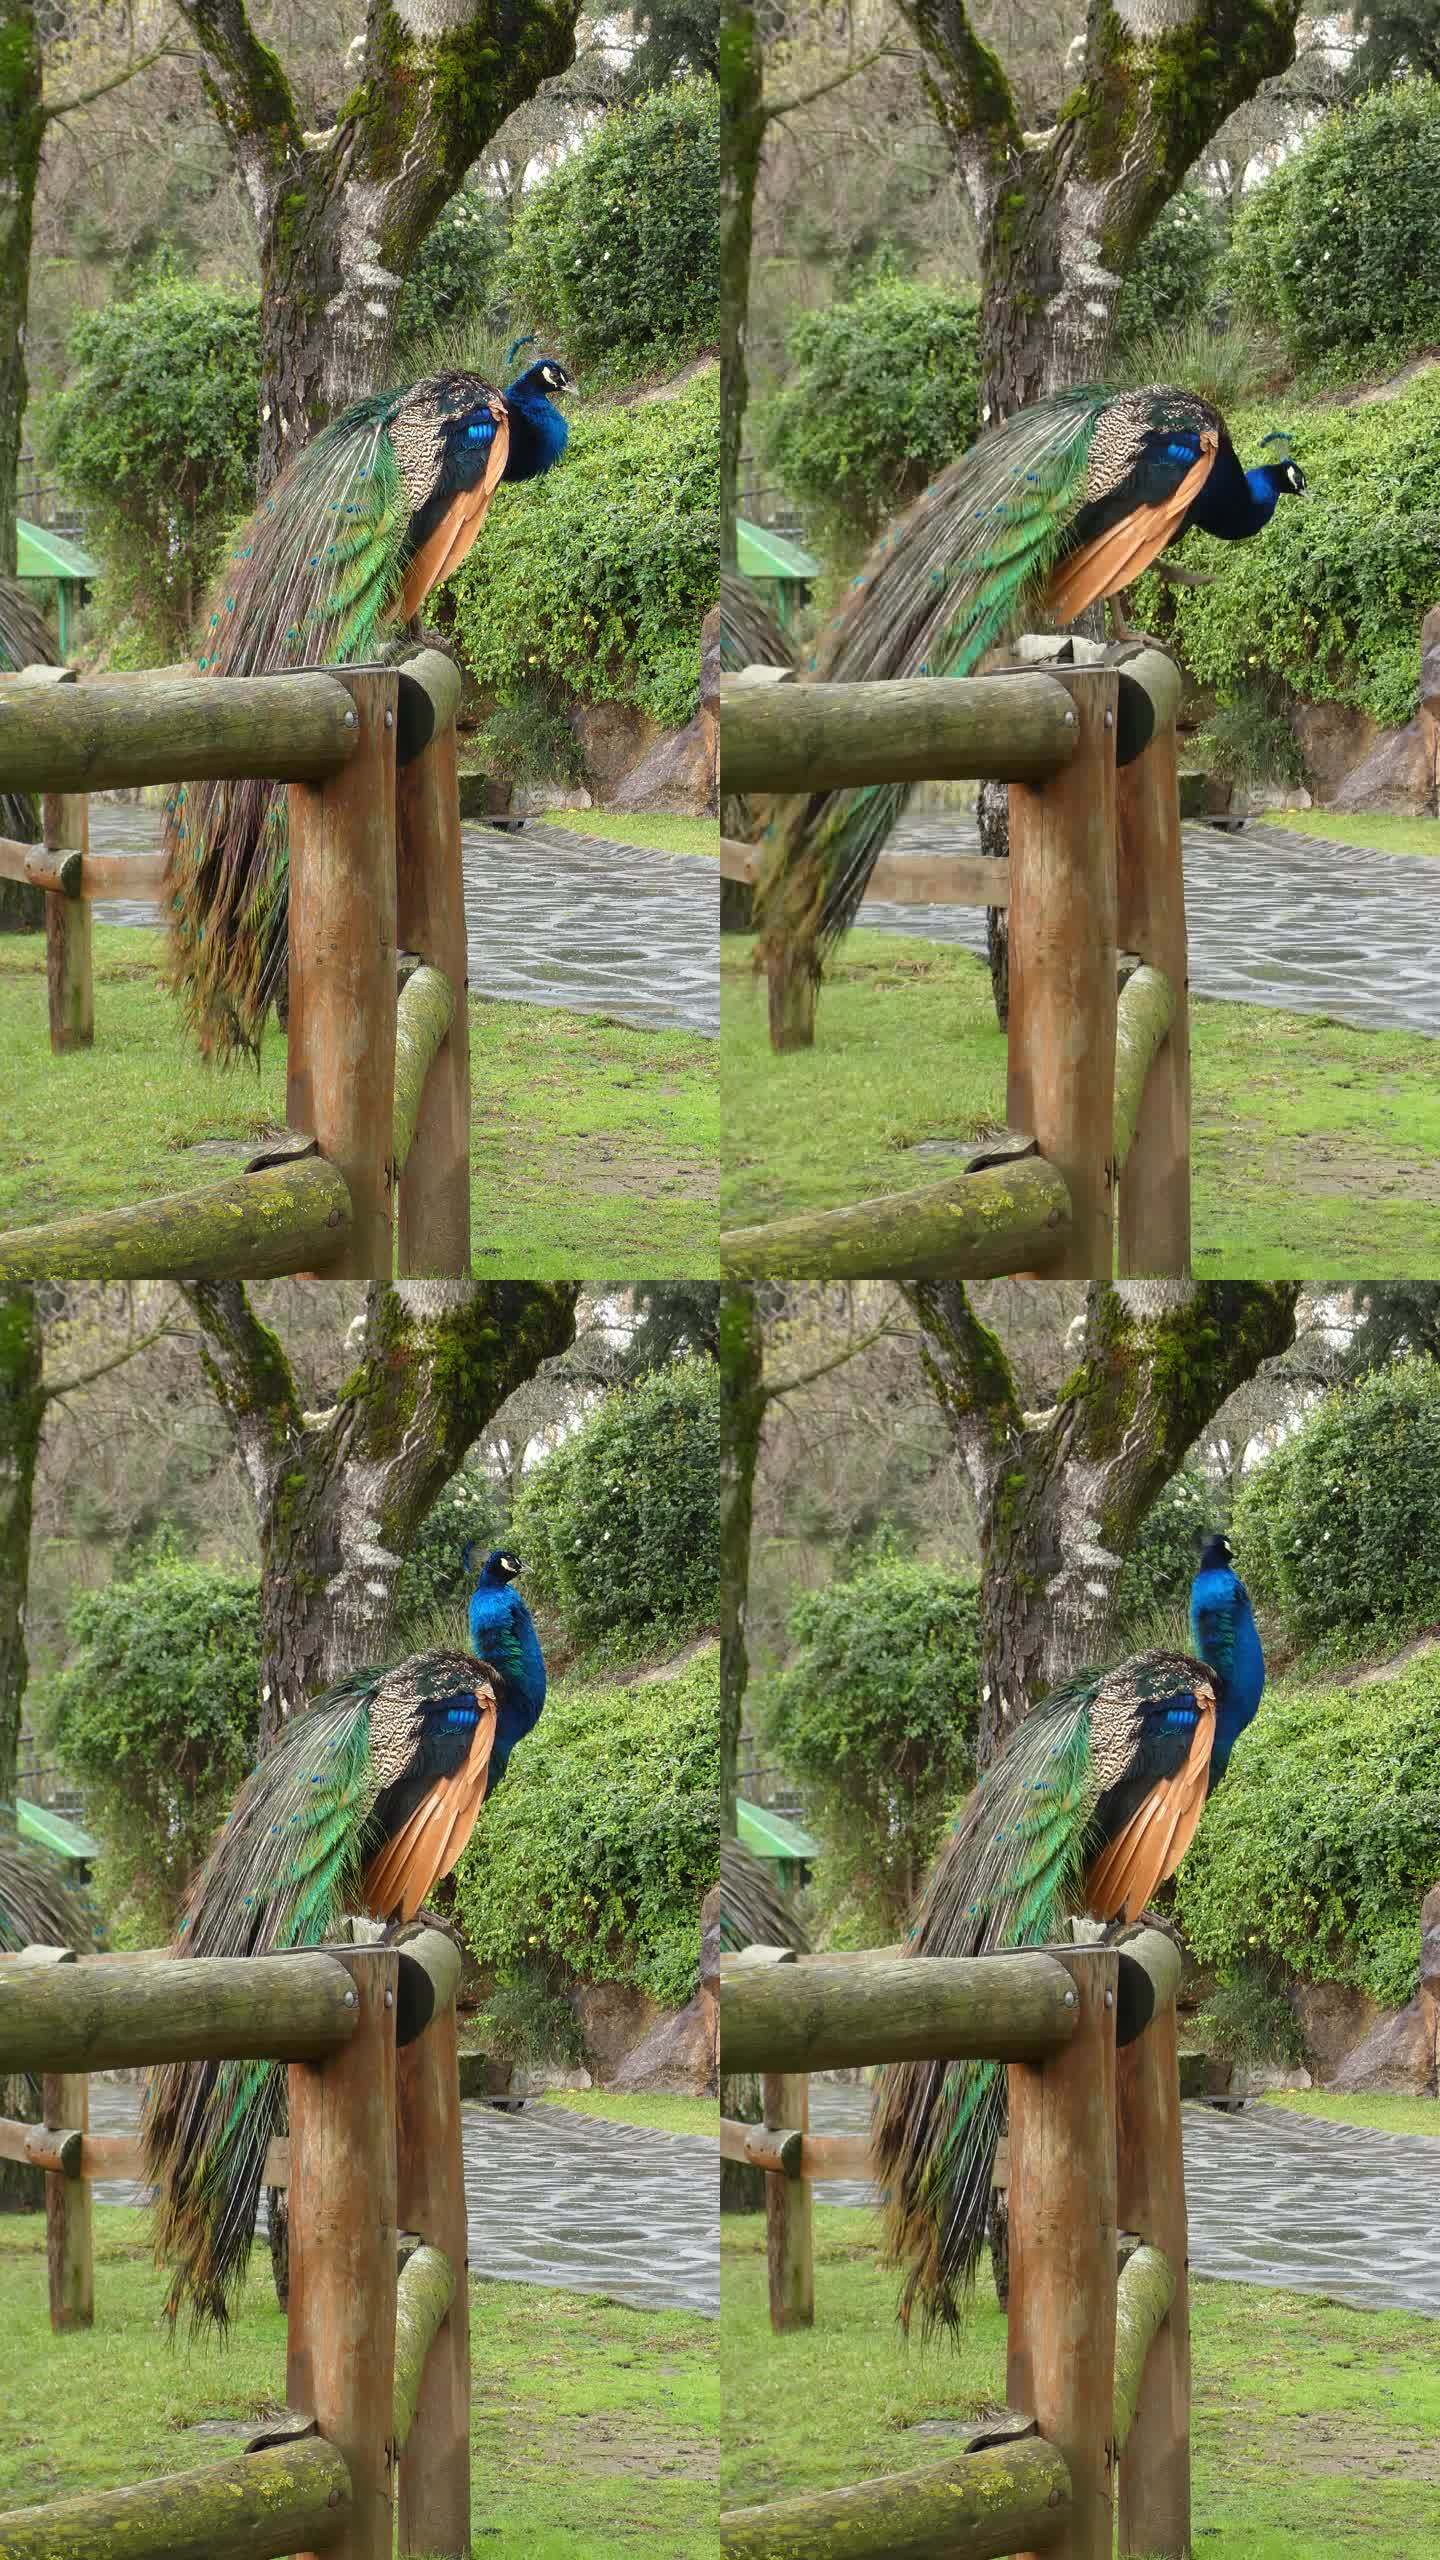 垂直视频。孔雀、孔雀或孔雀，生活在公园里五颜六色的尾羽姿态优雅。栖息在一根棍子上